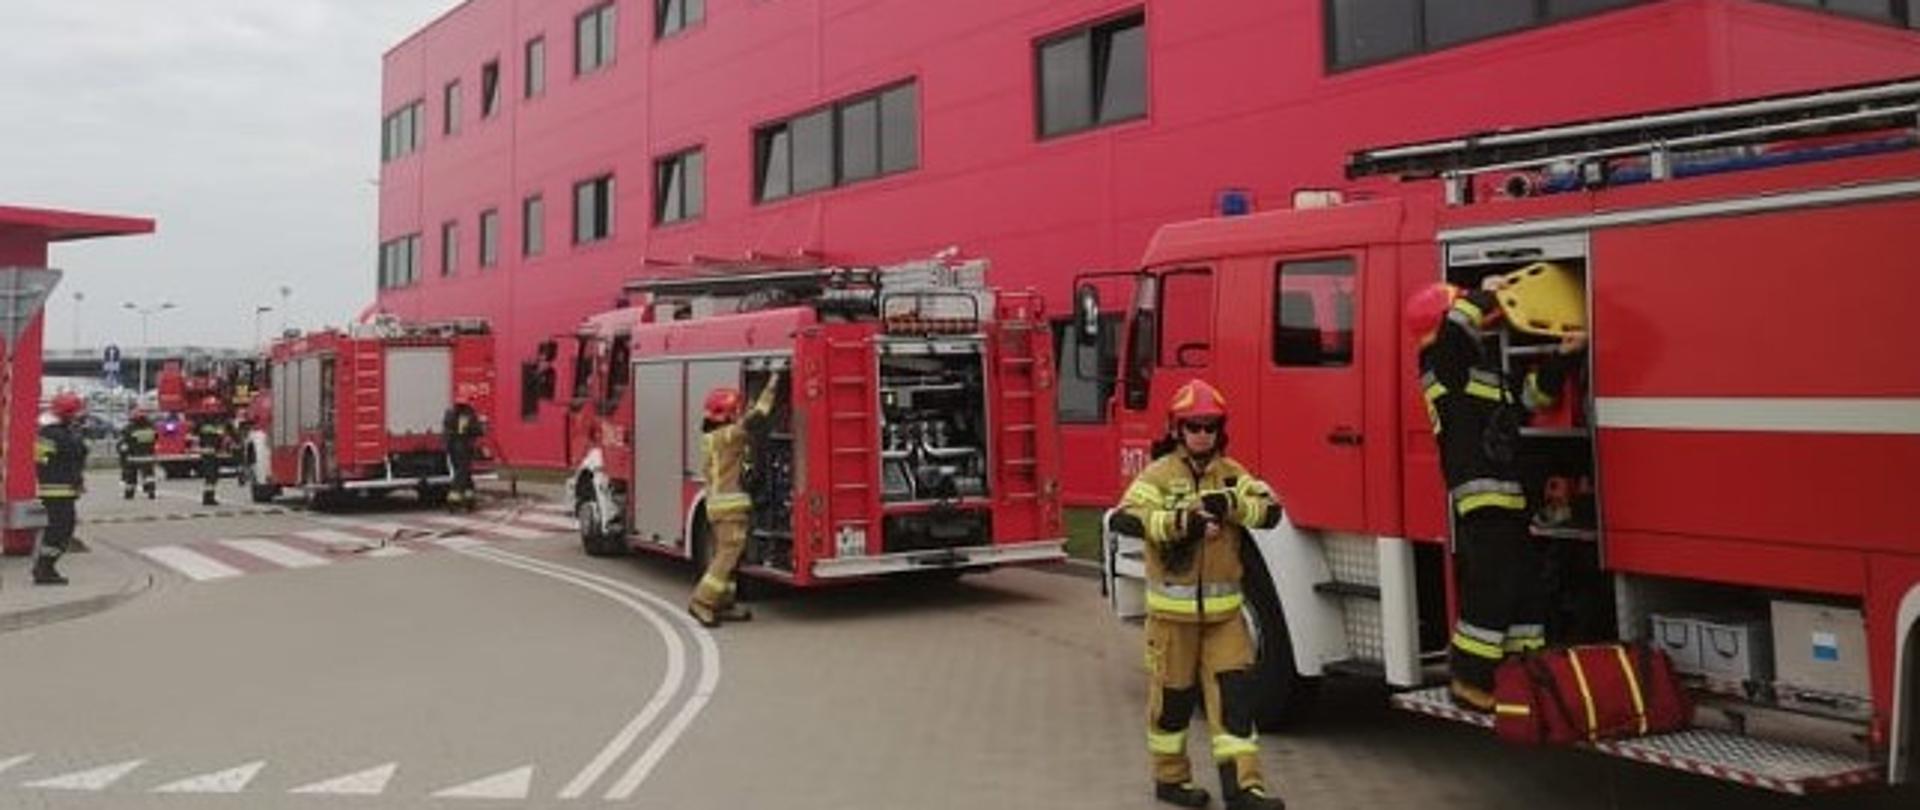 Na zdjęciu widoczny jest budynek terminala, trzy samochody straży pożarnej oraz pracujący strażacy.